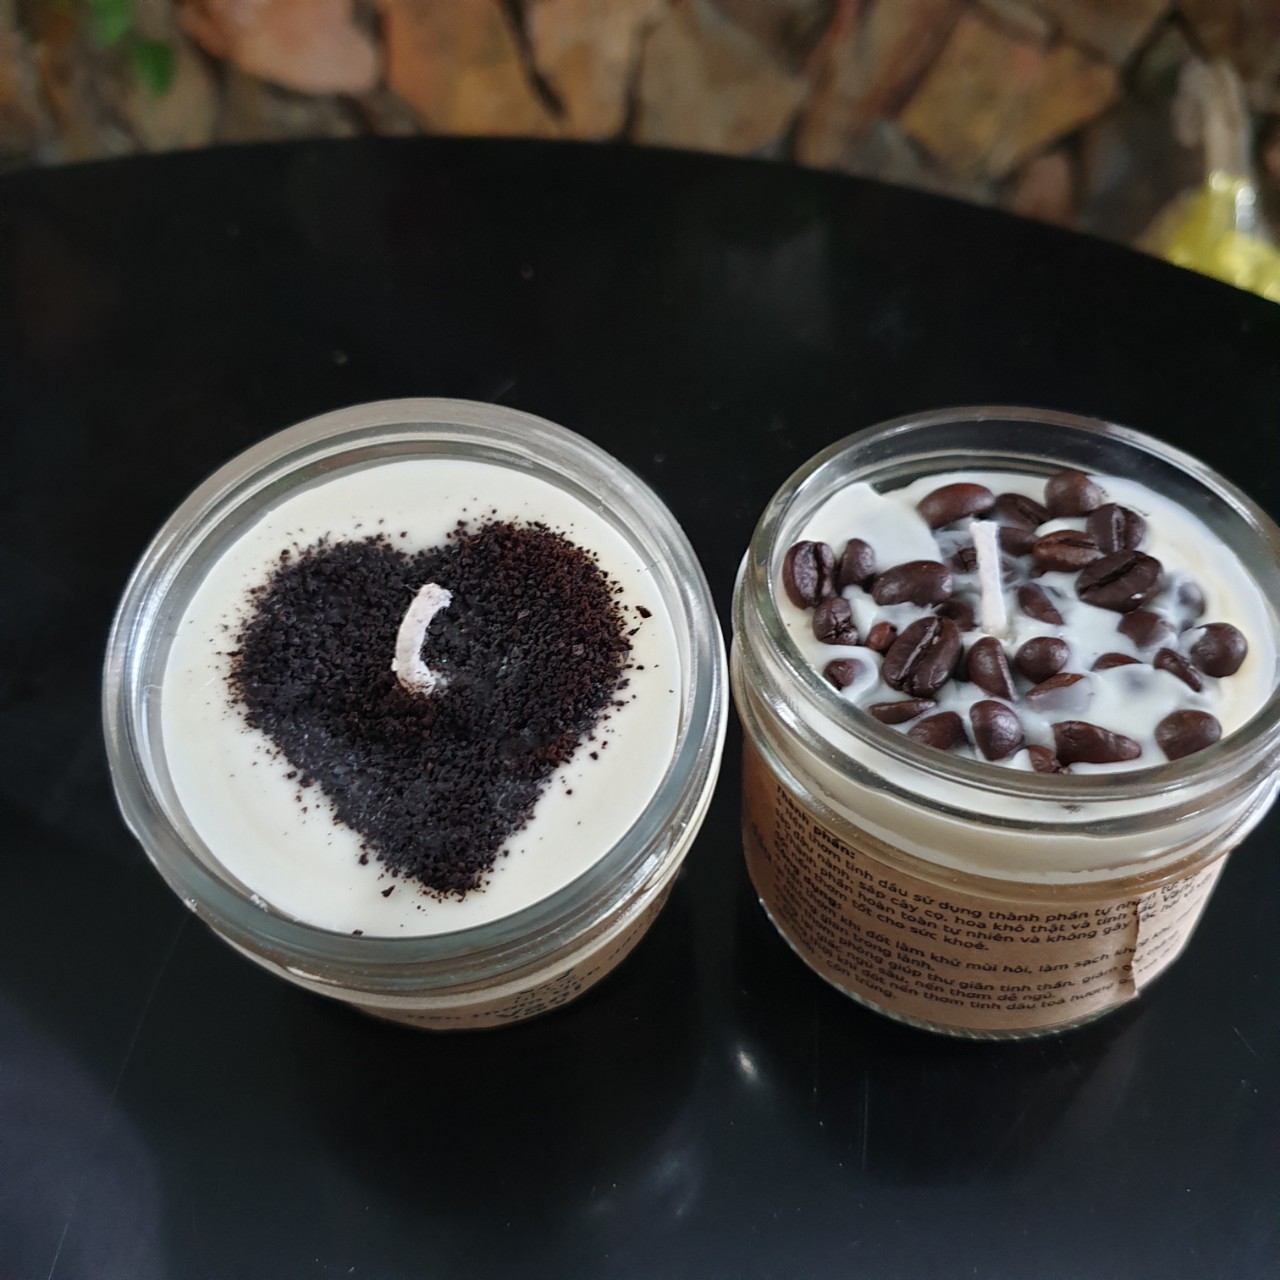 Nến thơm tinh dầu cà phê (coffee candle) 100g - Giúp thơm phòng, thư giãn giảm stress với thành phần hoàn toàn tự nhiên